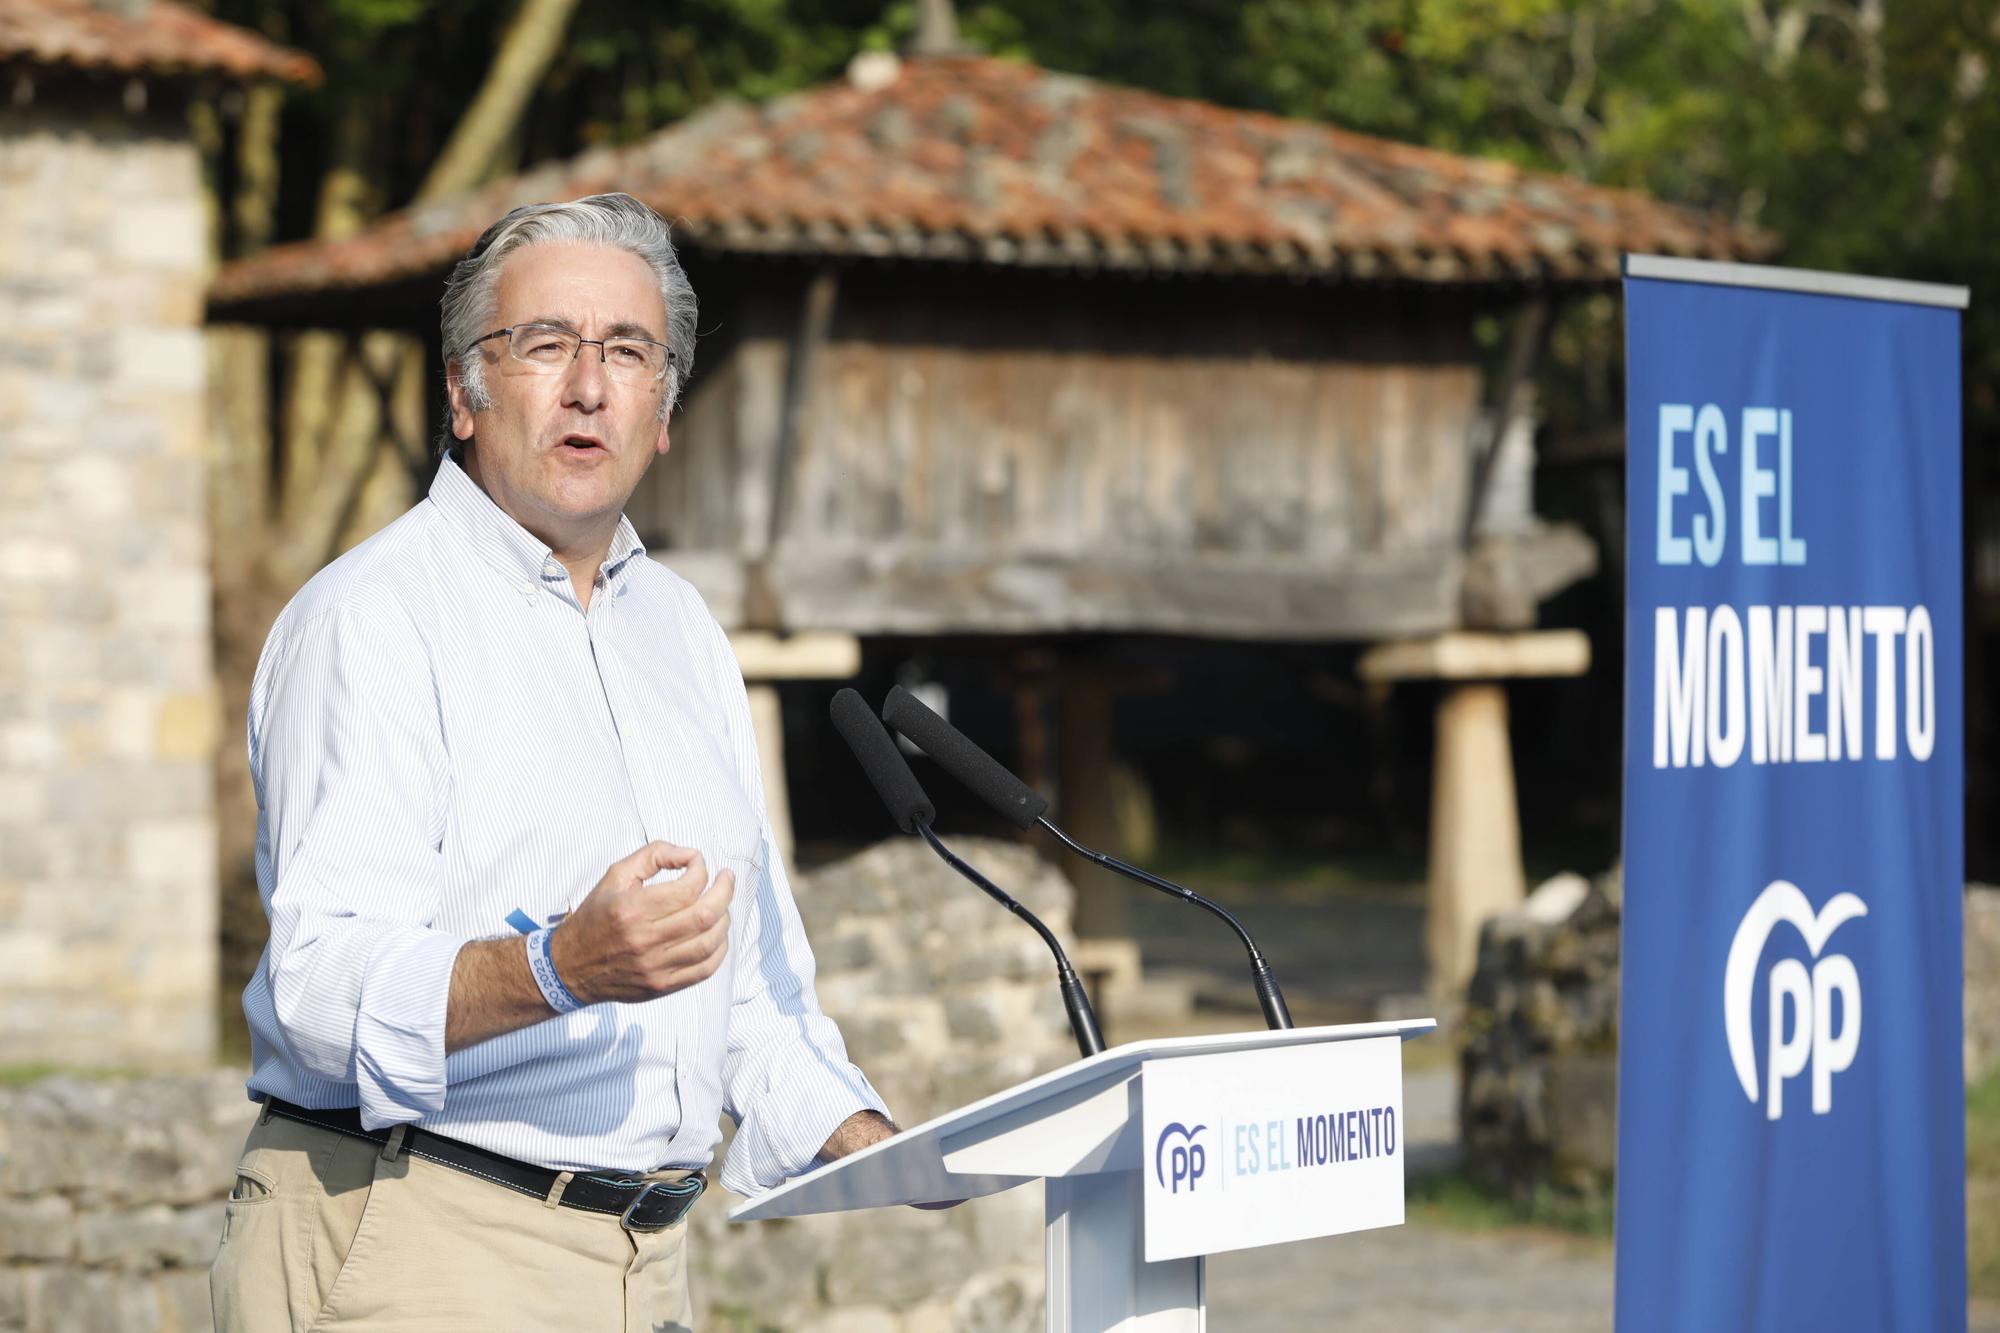 El cierre de campaña del PP de Asturias, en imágenes